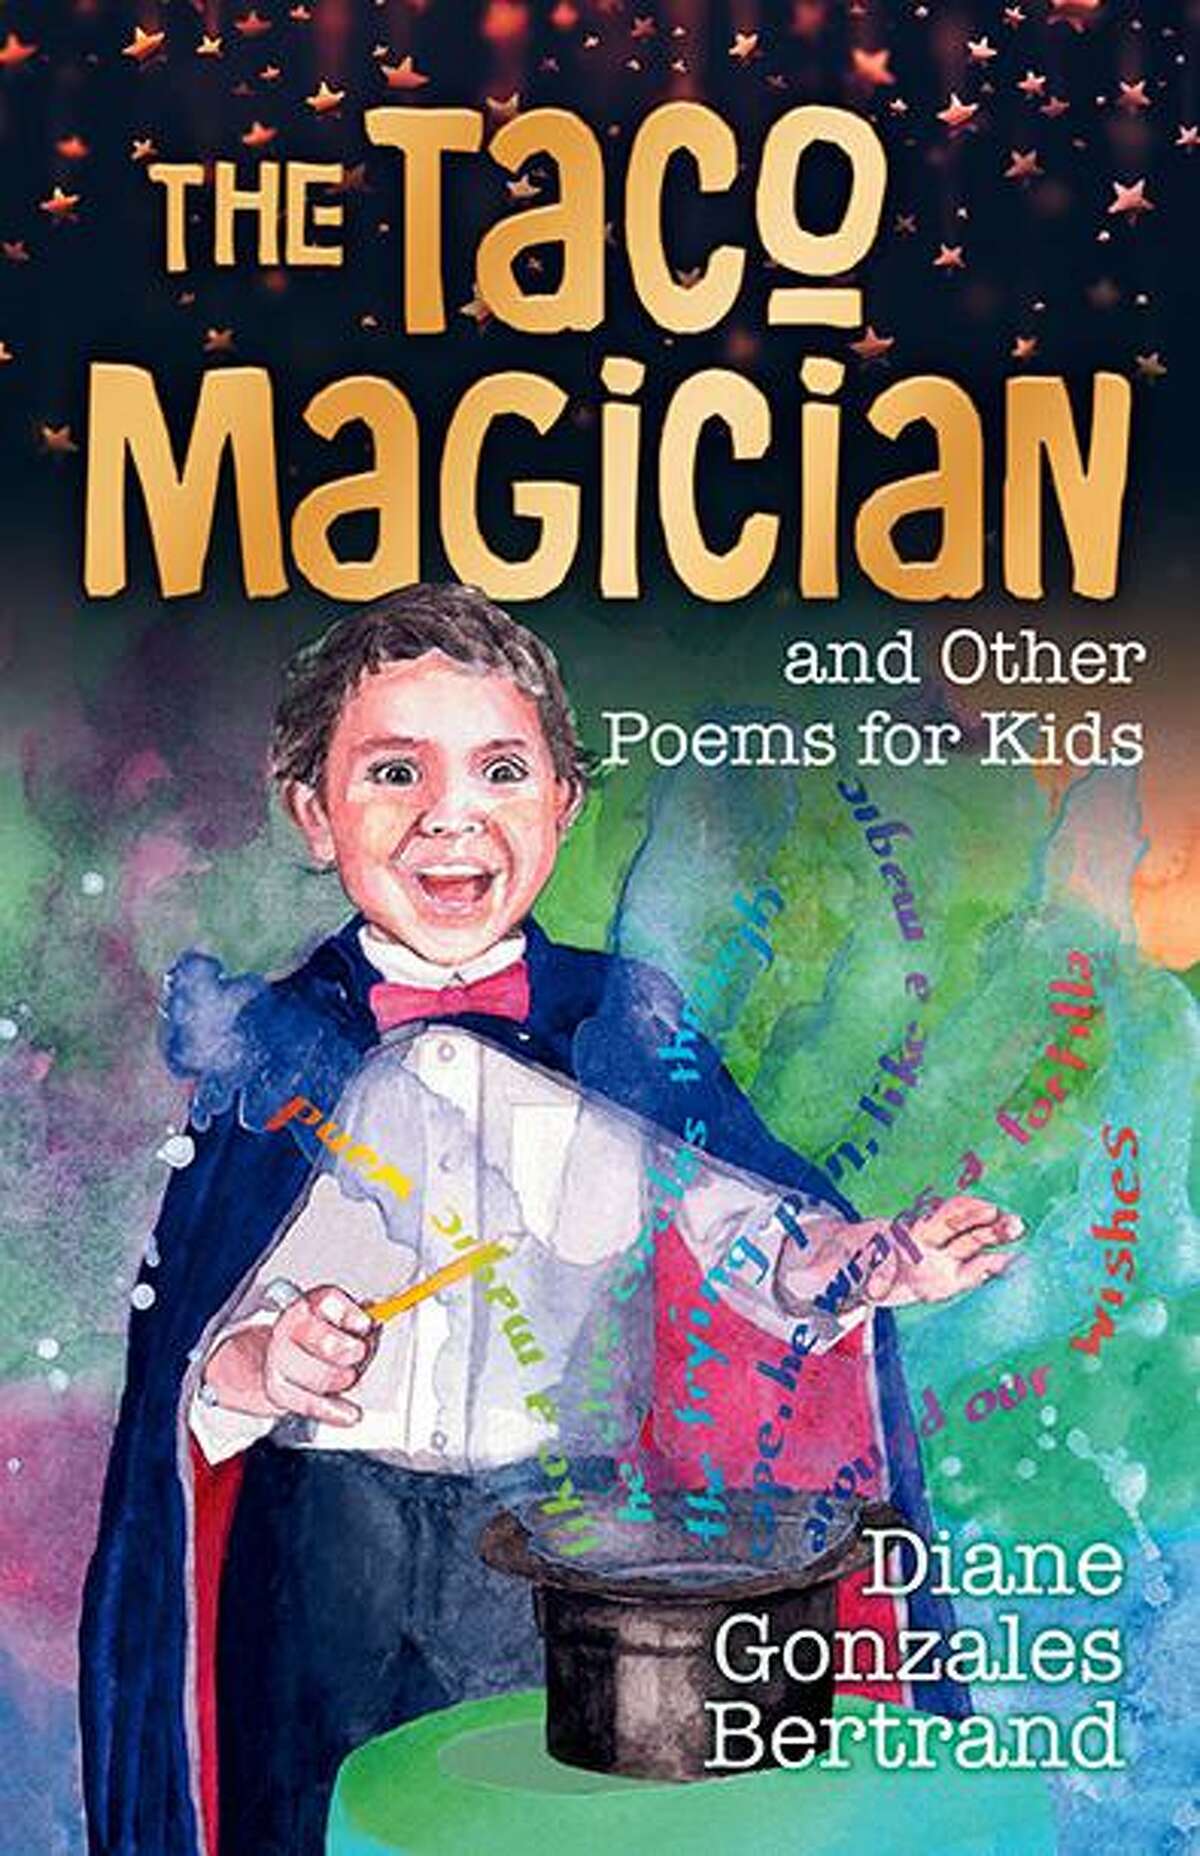 San Antonio-based writer Diane Gonazales Bertrand’s latest children’s book is “The Taco Magician and Other Poems for Kids / El mago de los tacos y otros poemas para niños.”